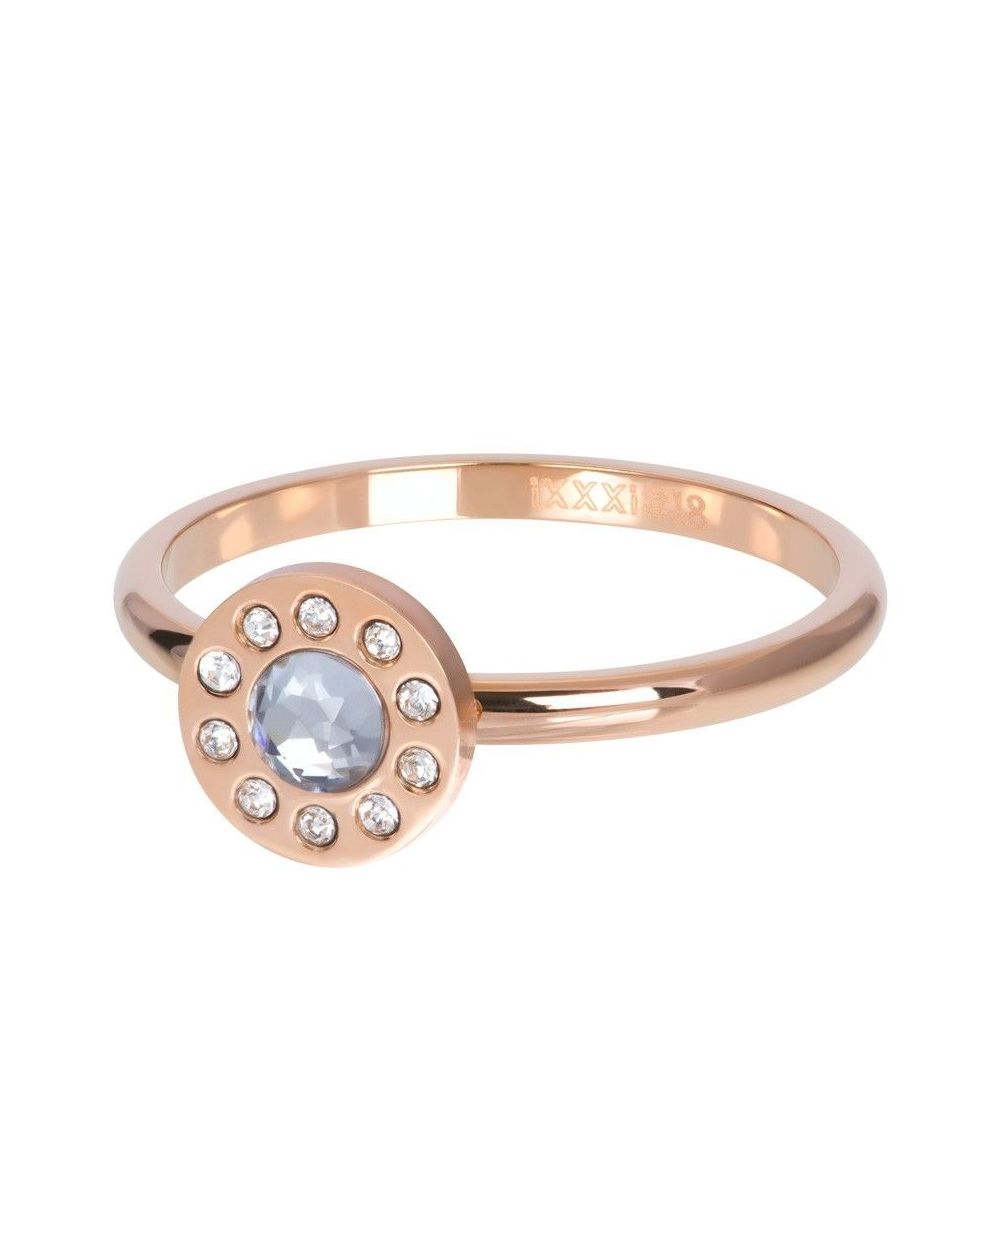 Cercle diamant rosé - Anneau couvrant iXXXi - R05803-02